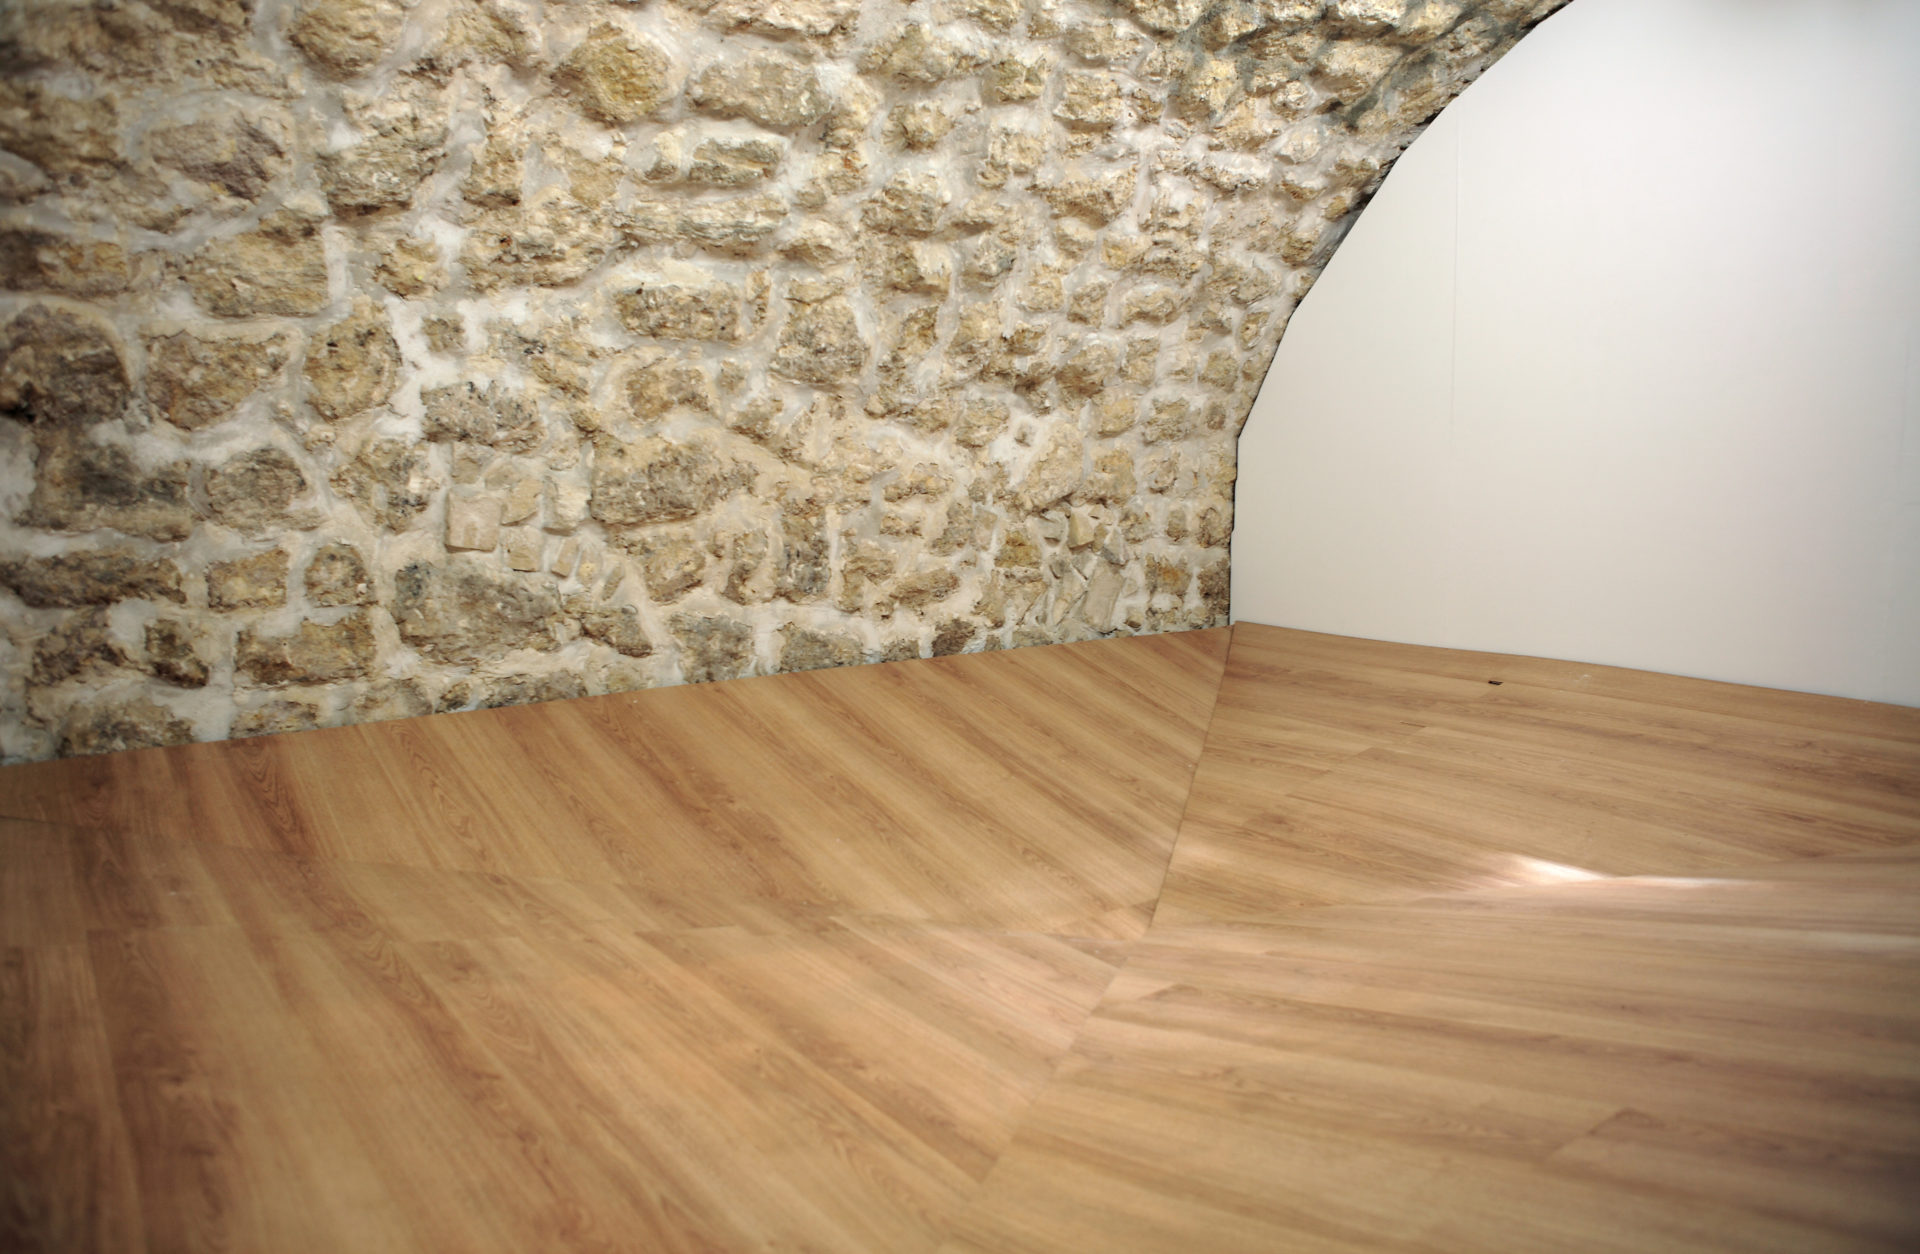 Fuite, bois et matériaux divers, ici: 400 x 303 x 45 cm, 2012